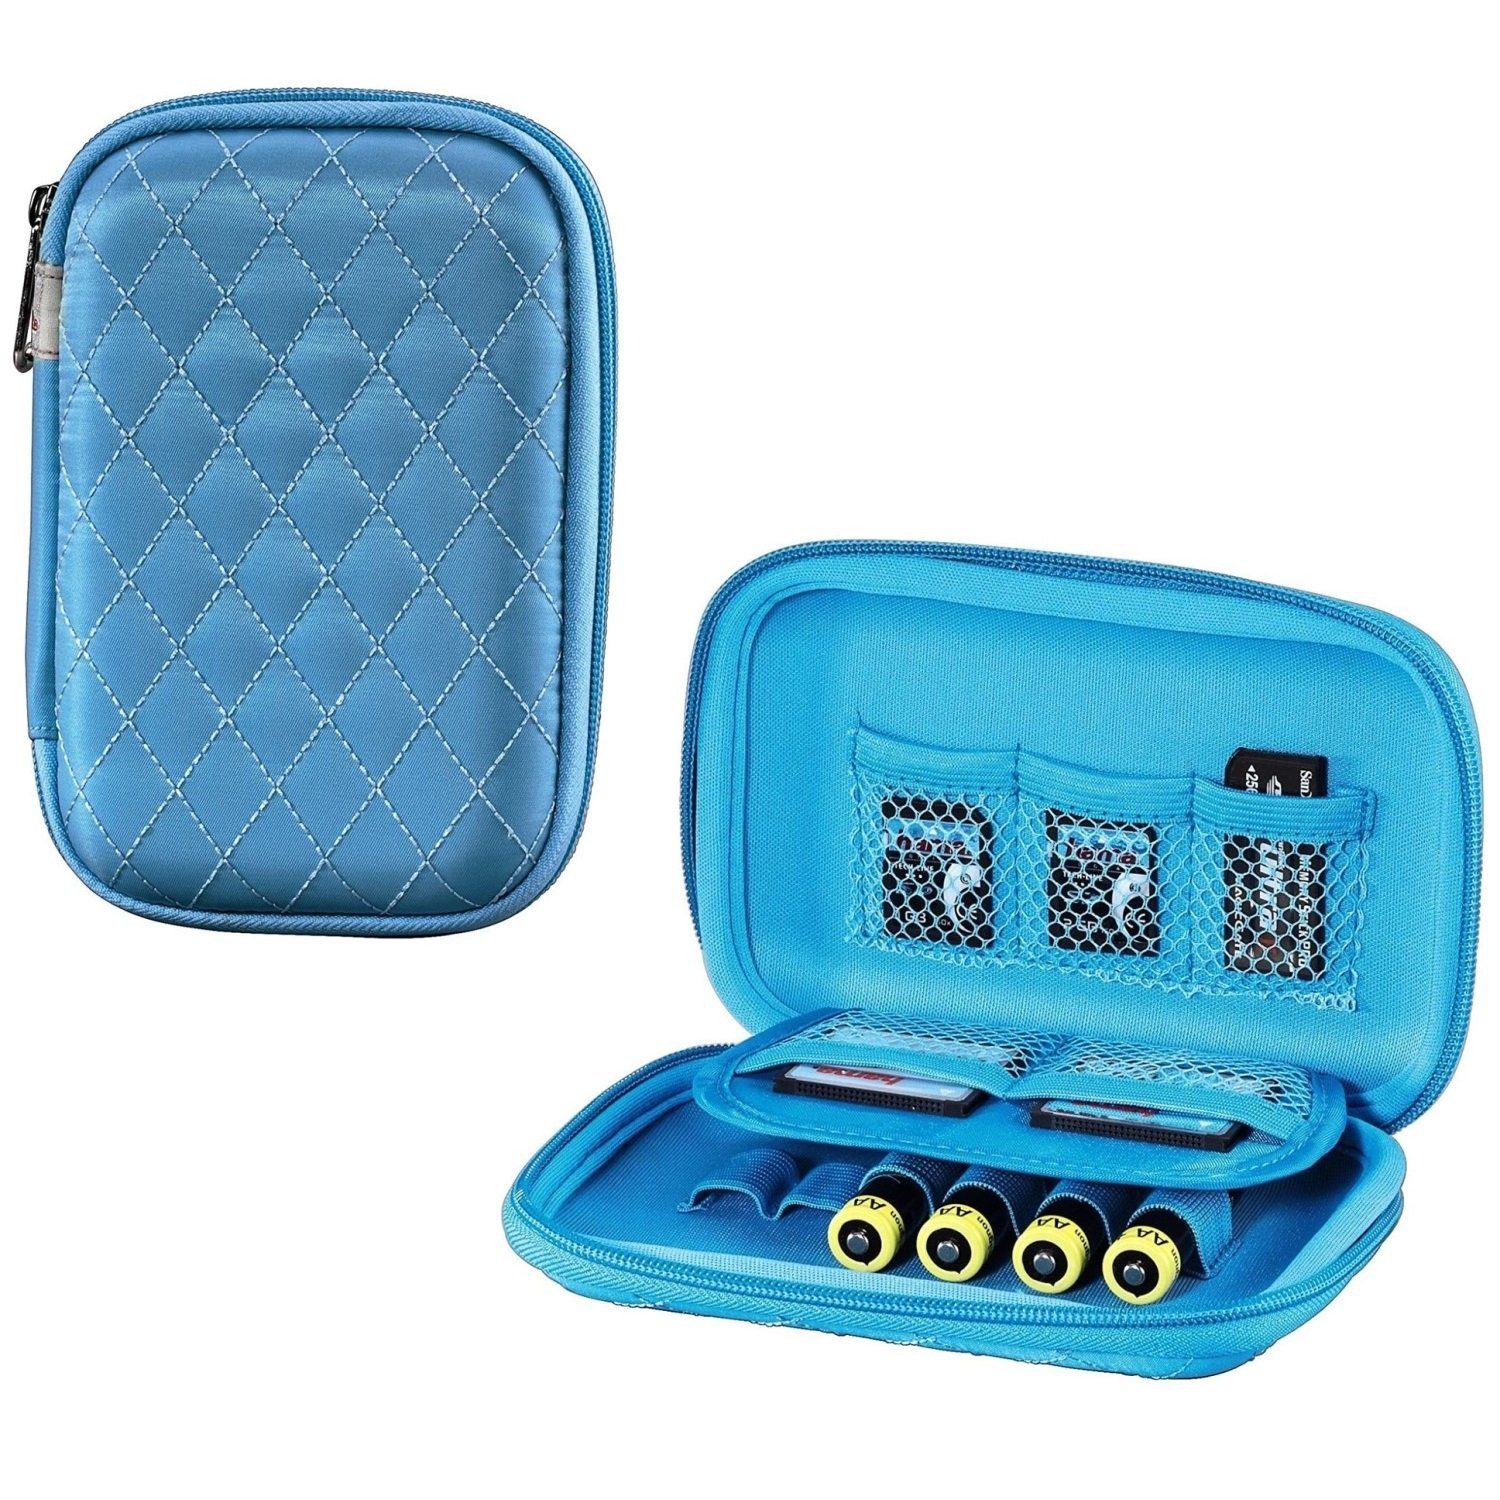 Hama Etui Speicherkarten-Tasche Case Etui Etui SD CF und SDHC Karte, Blau, 8x Bahia MS Batterien für MMC USB-Sticks xD 6x